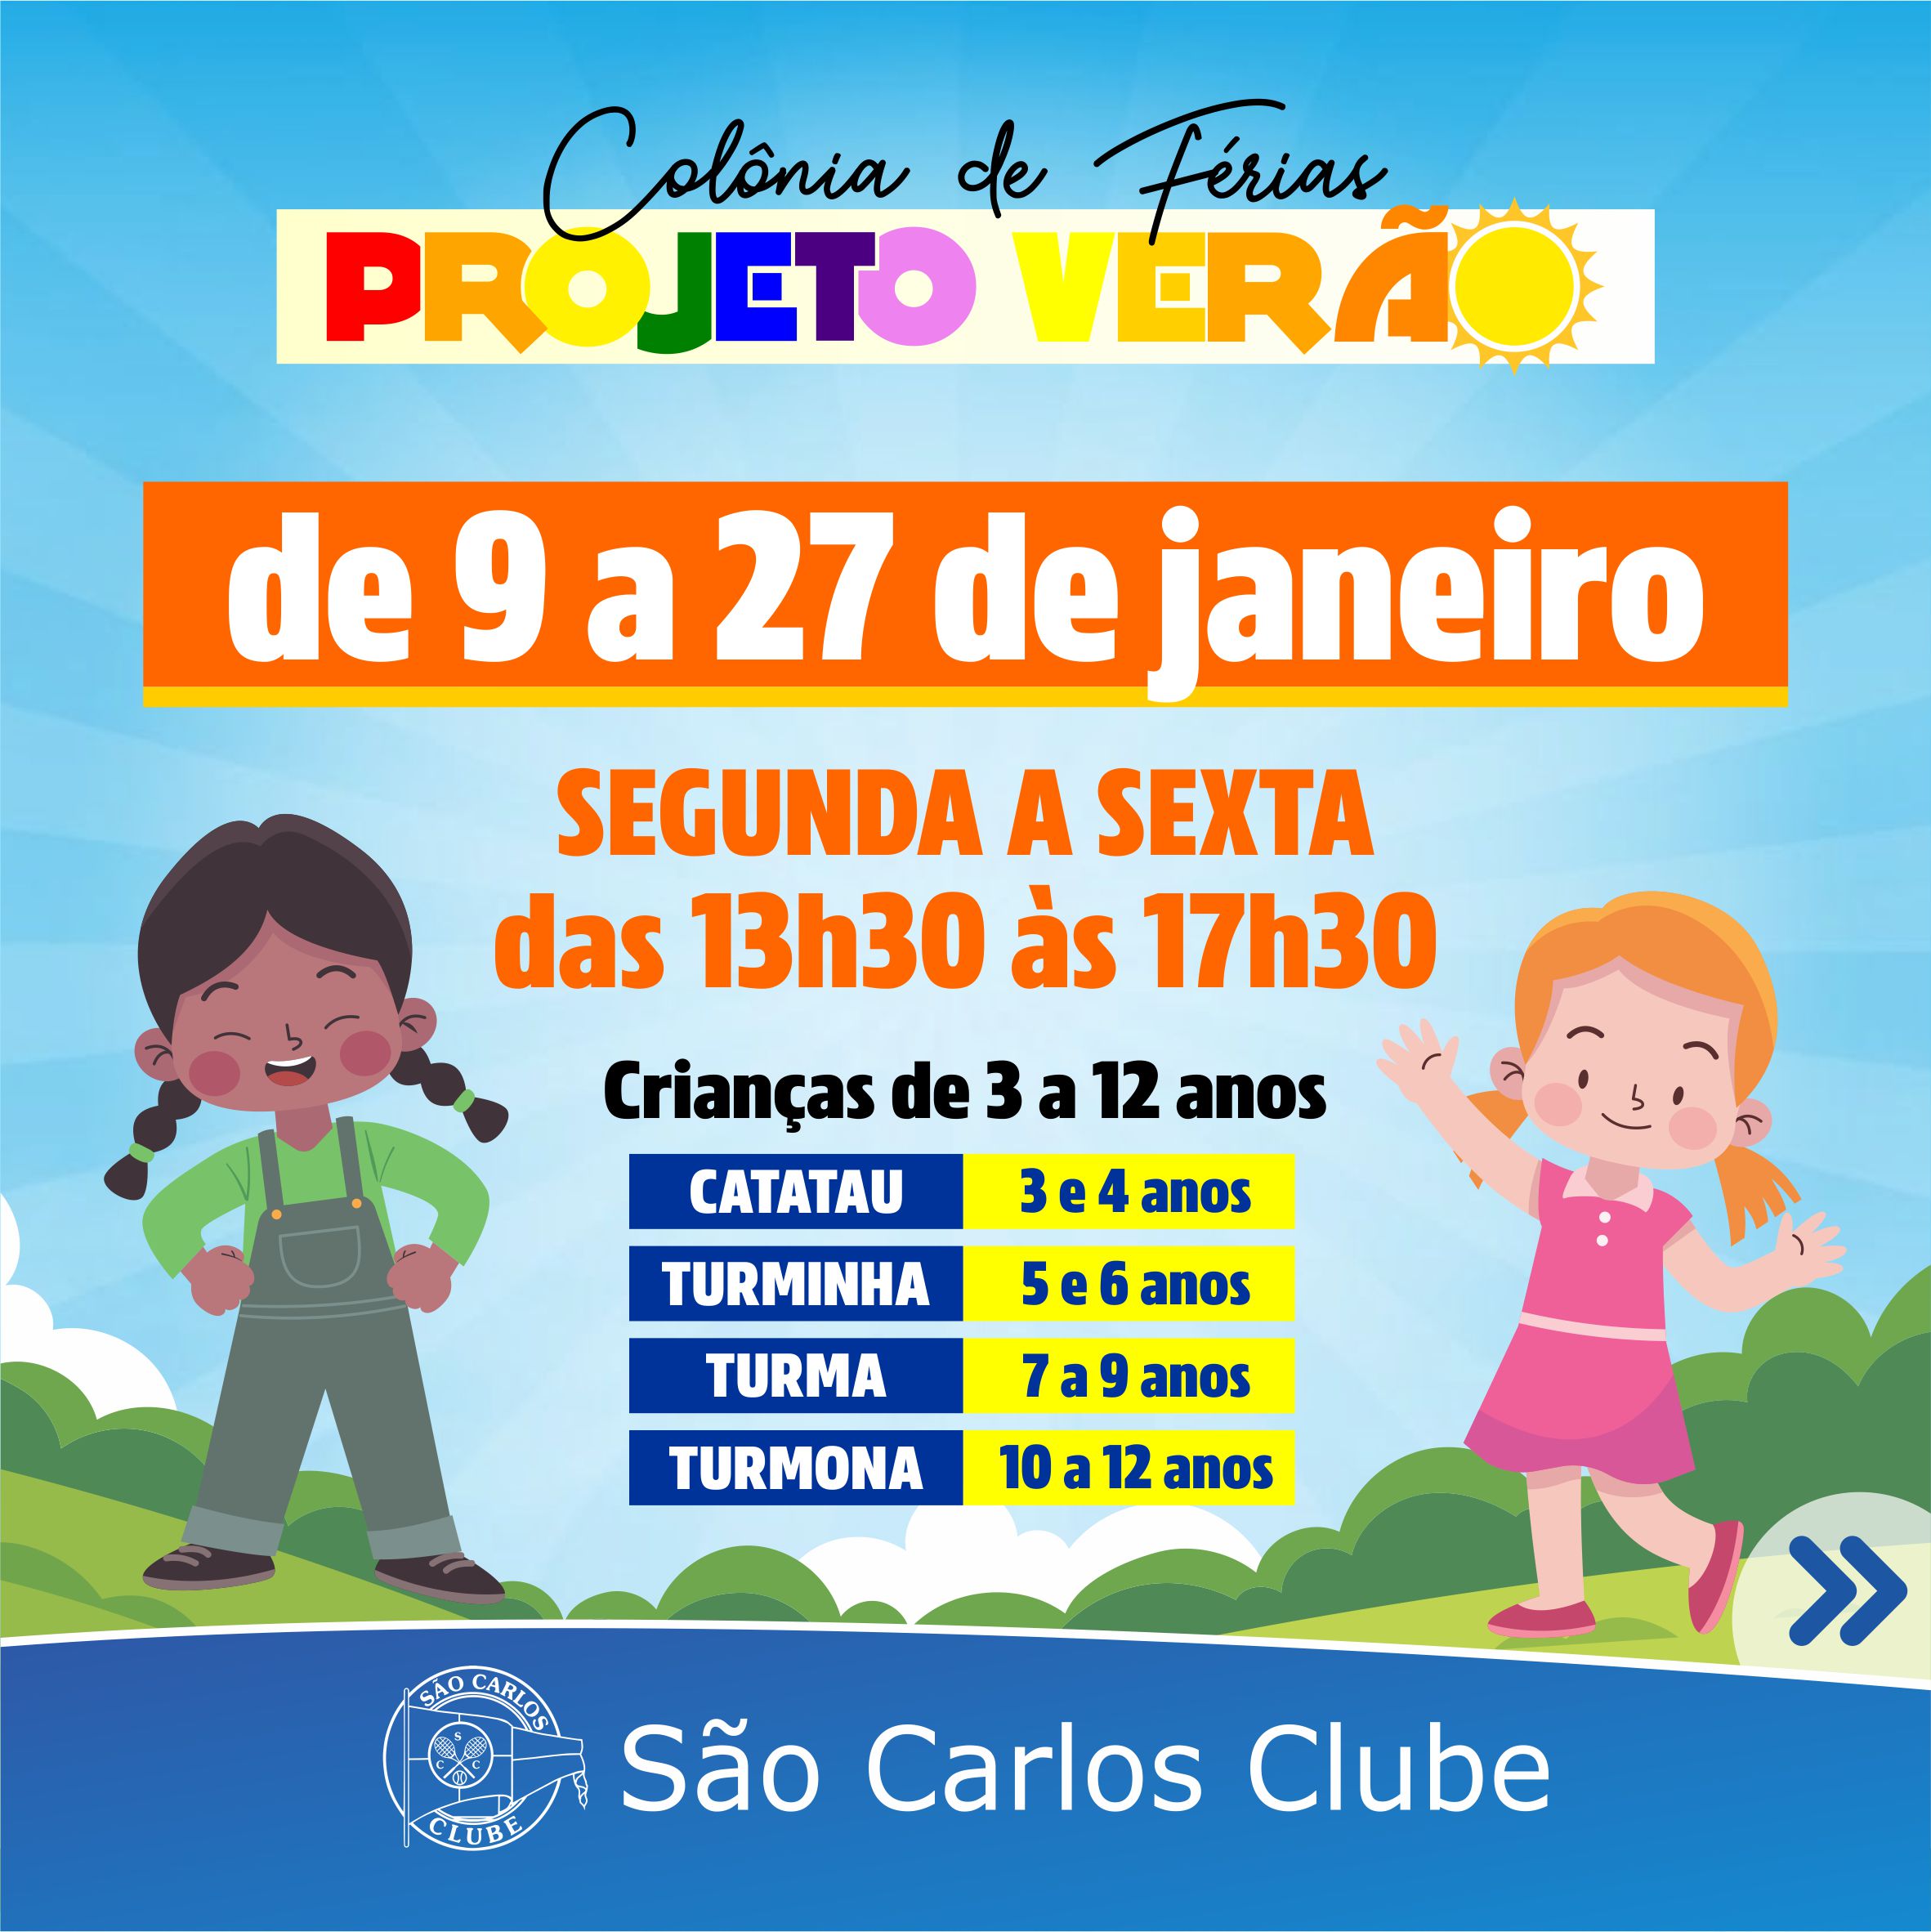 São Carlos Clube - Montagem da Festa Junina altera acesso ao clube a partir  do dia 23